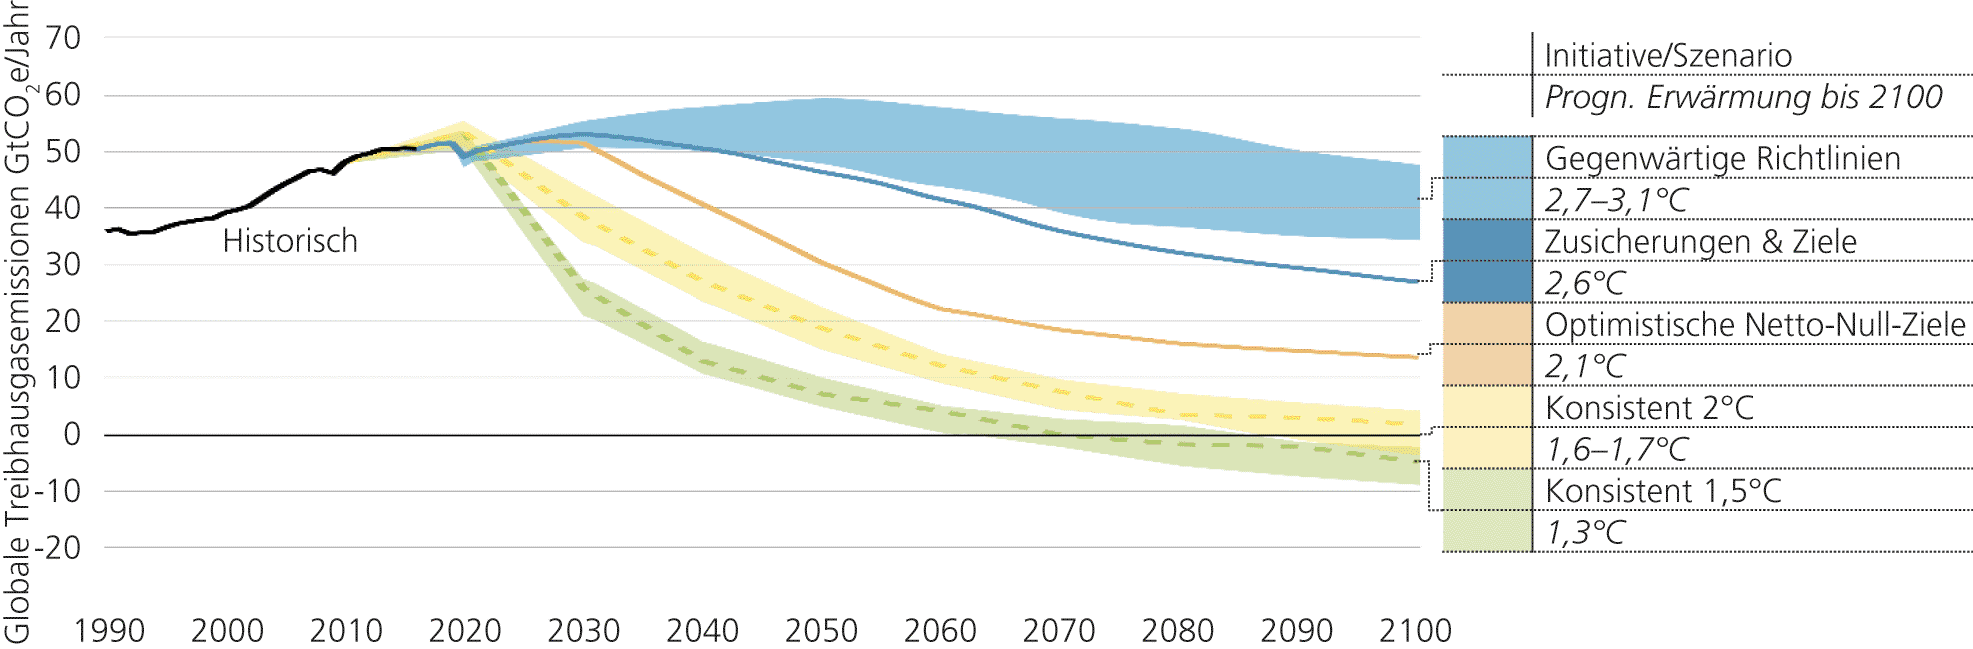 Abb. 2: Prognosen zur globalen Erwärmung bis zum Jahr 2100: Emissionen und erwartete Erwärmung auf Basis von Absichtserklärungen und aktueller politischer Maßnahmen per 12/2020